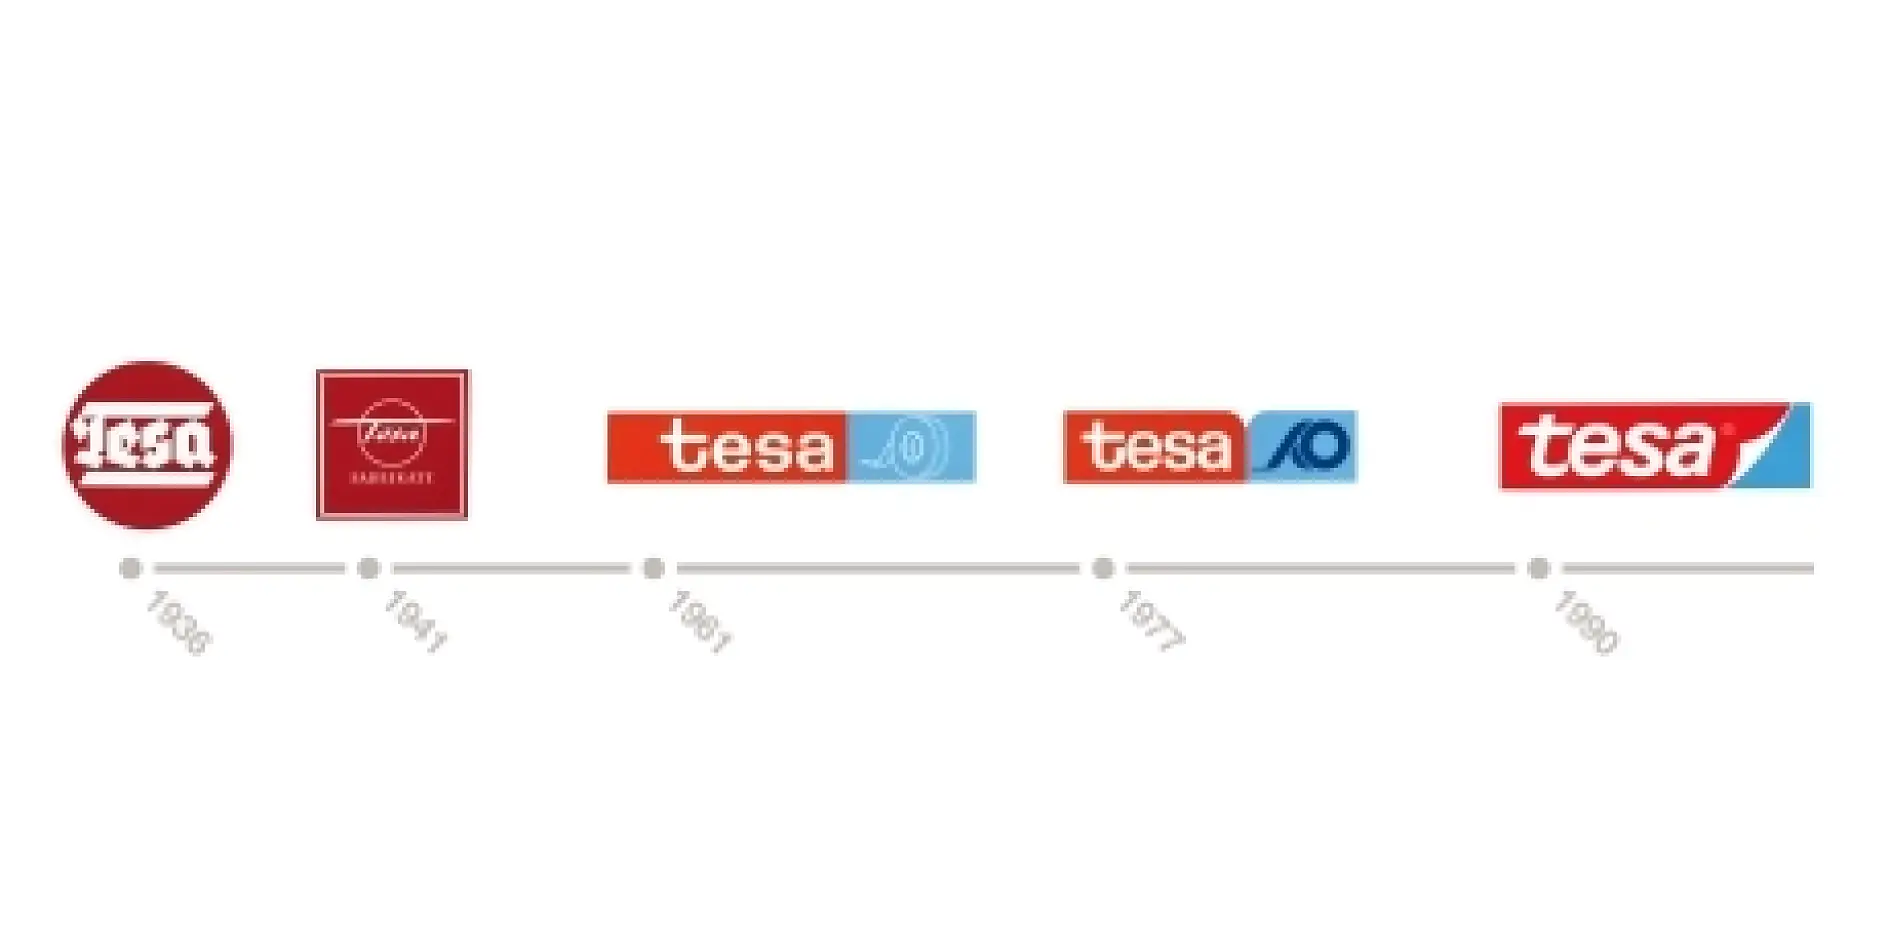 tesa logo development 1936 to today